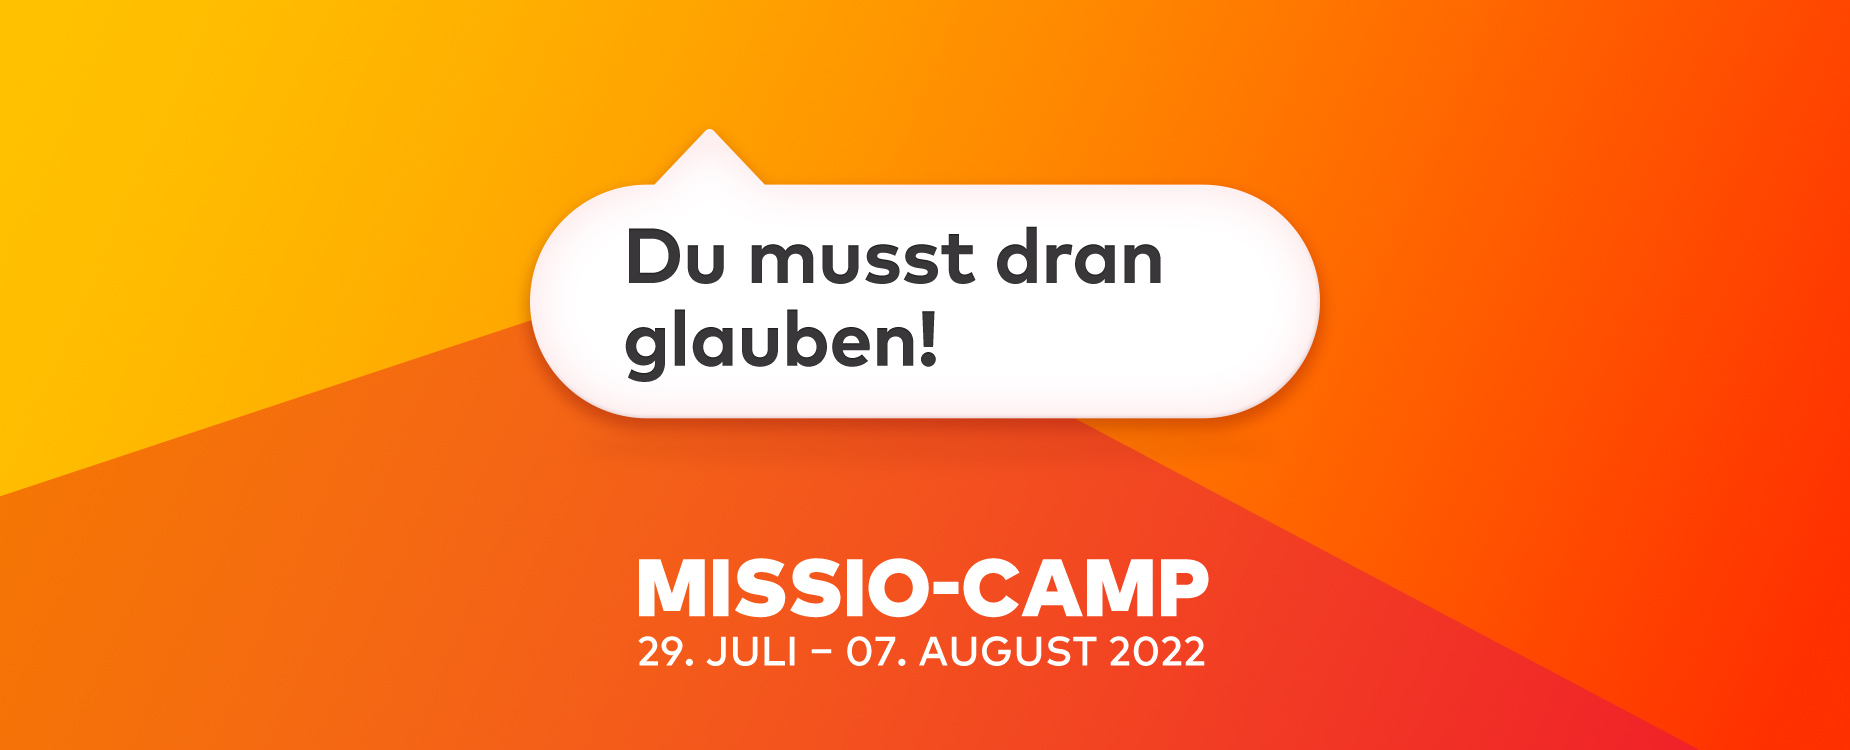 MISSIO-CAMP 29. Juli – 07. August 2022 – Du musst dran glauben!